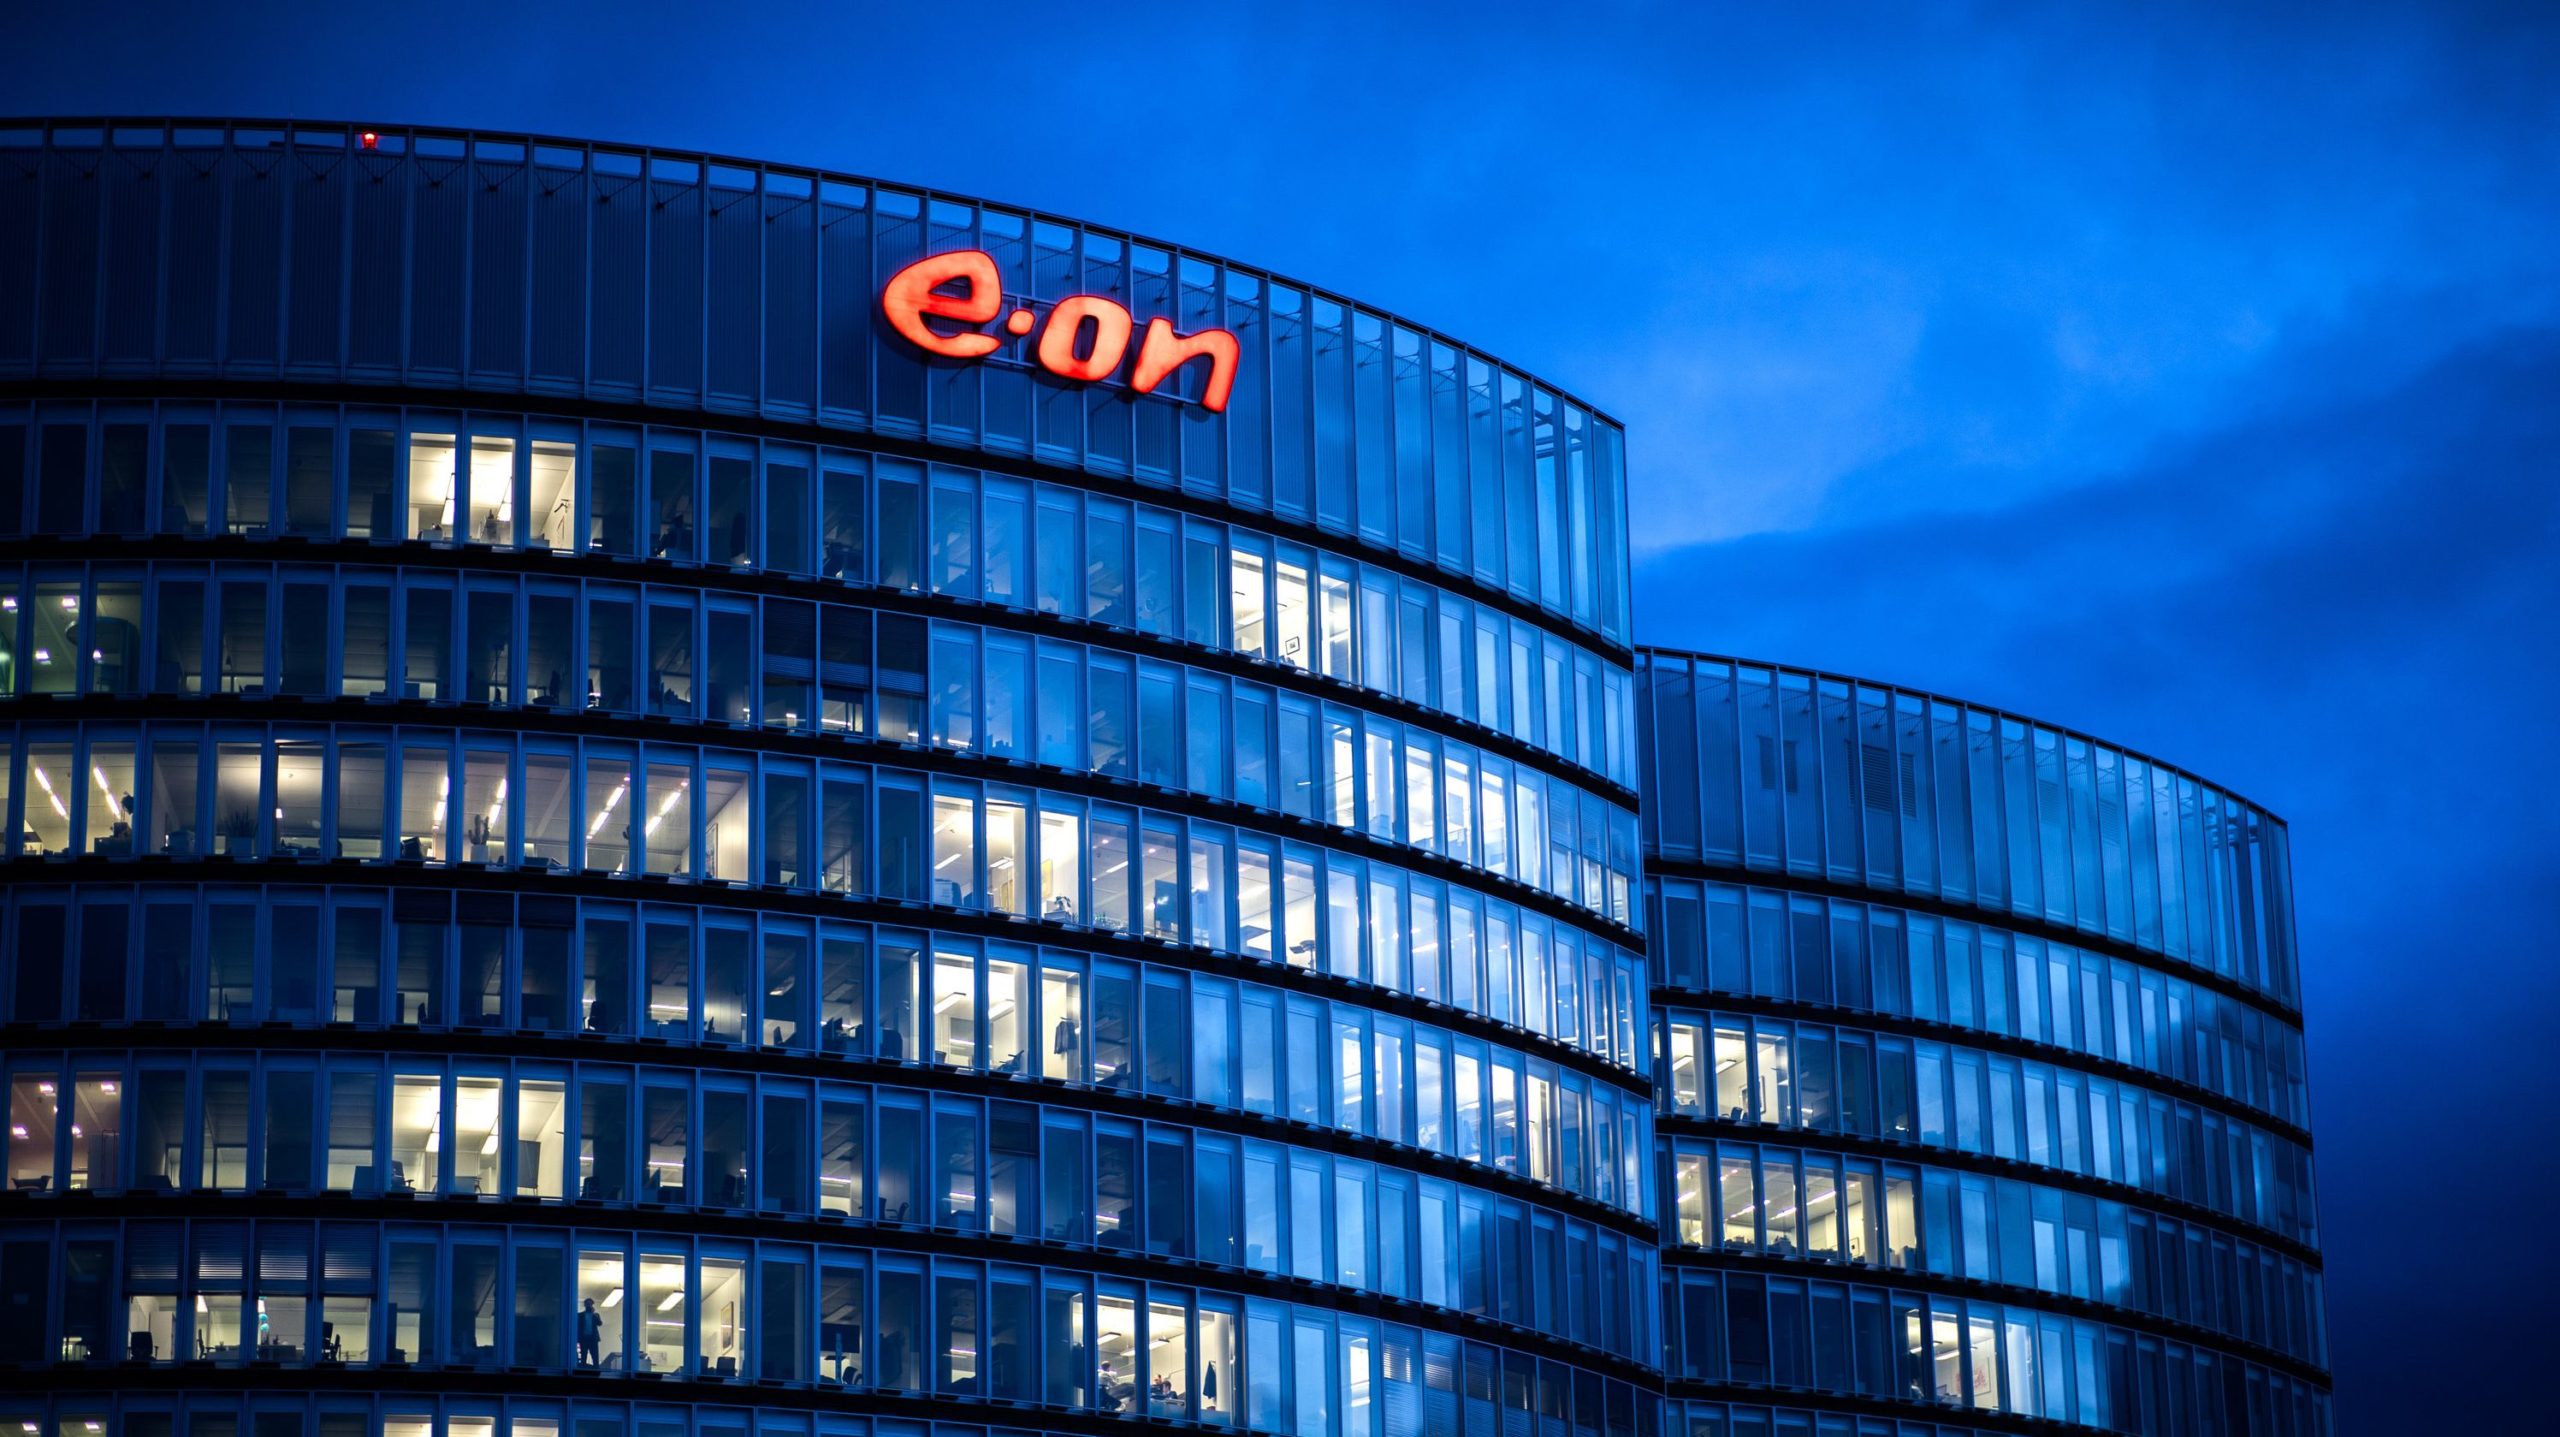 Alman enerji şirketi E.ON, Gazprom’un Avrupa’daki şirketlerinden gaz alımını durdurdu